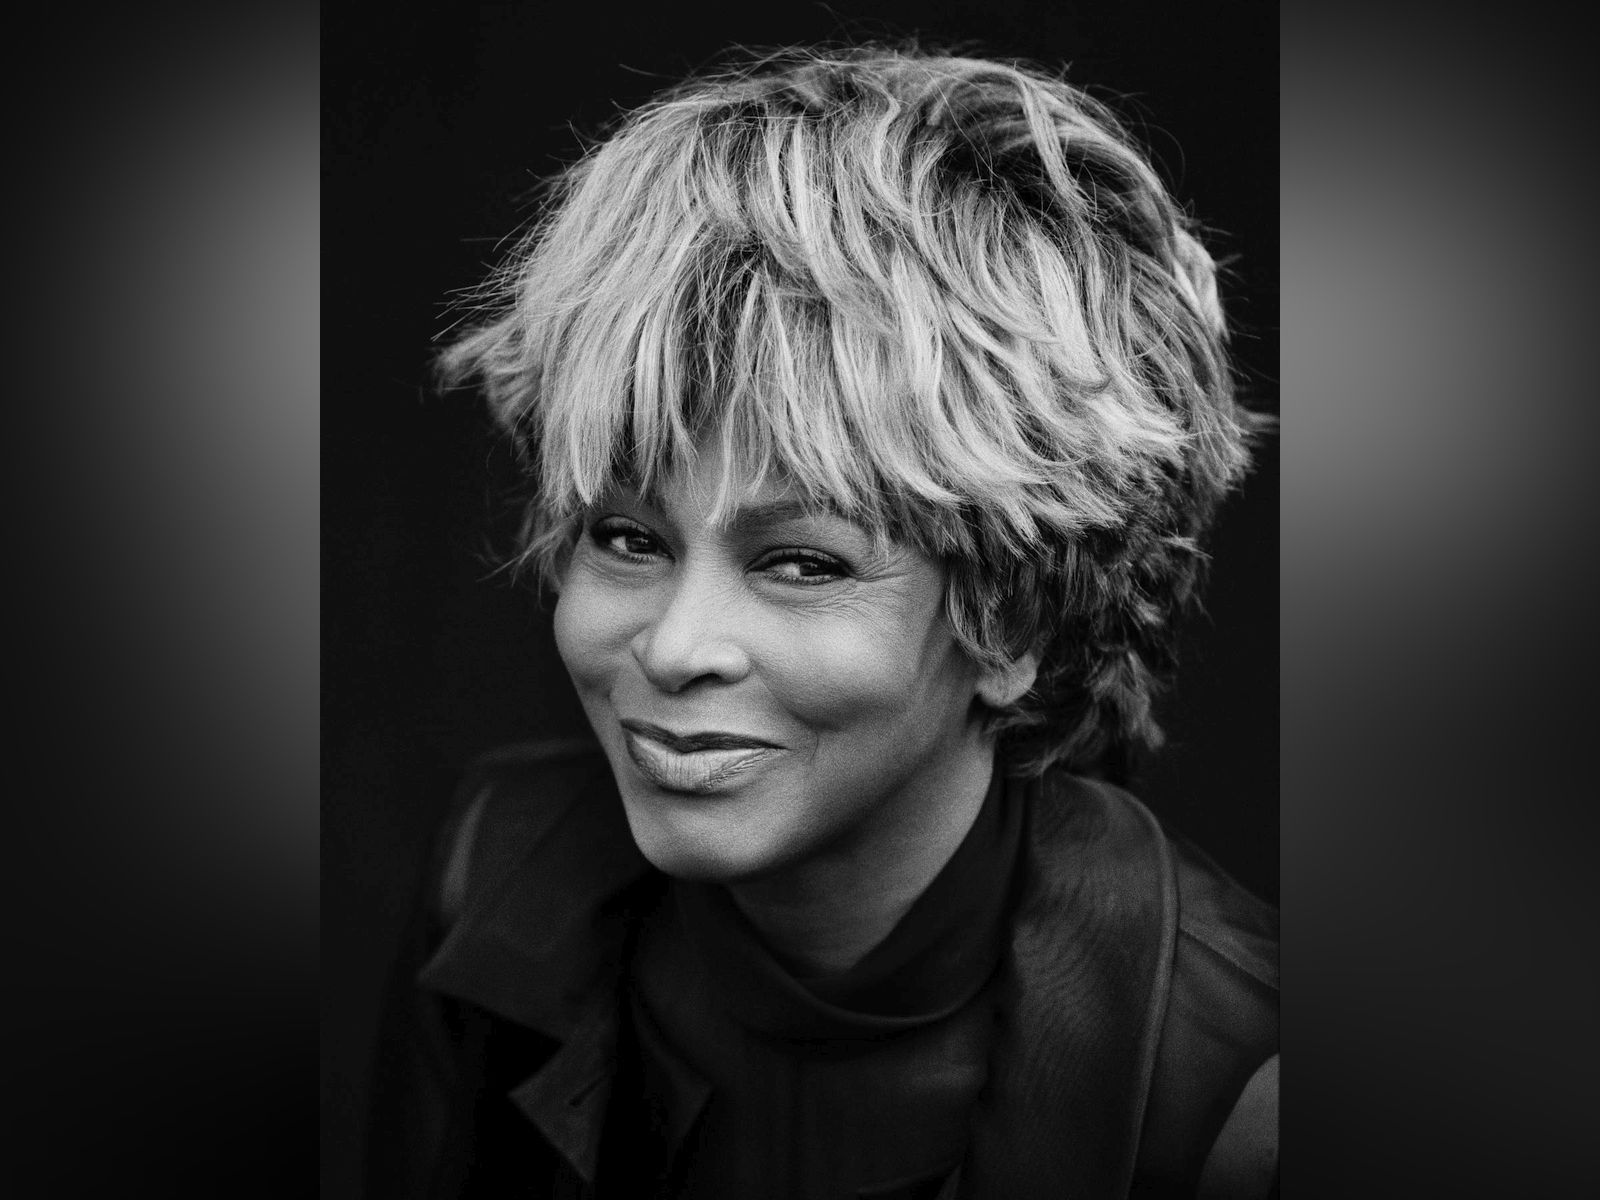 Adiós a Tina Turner